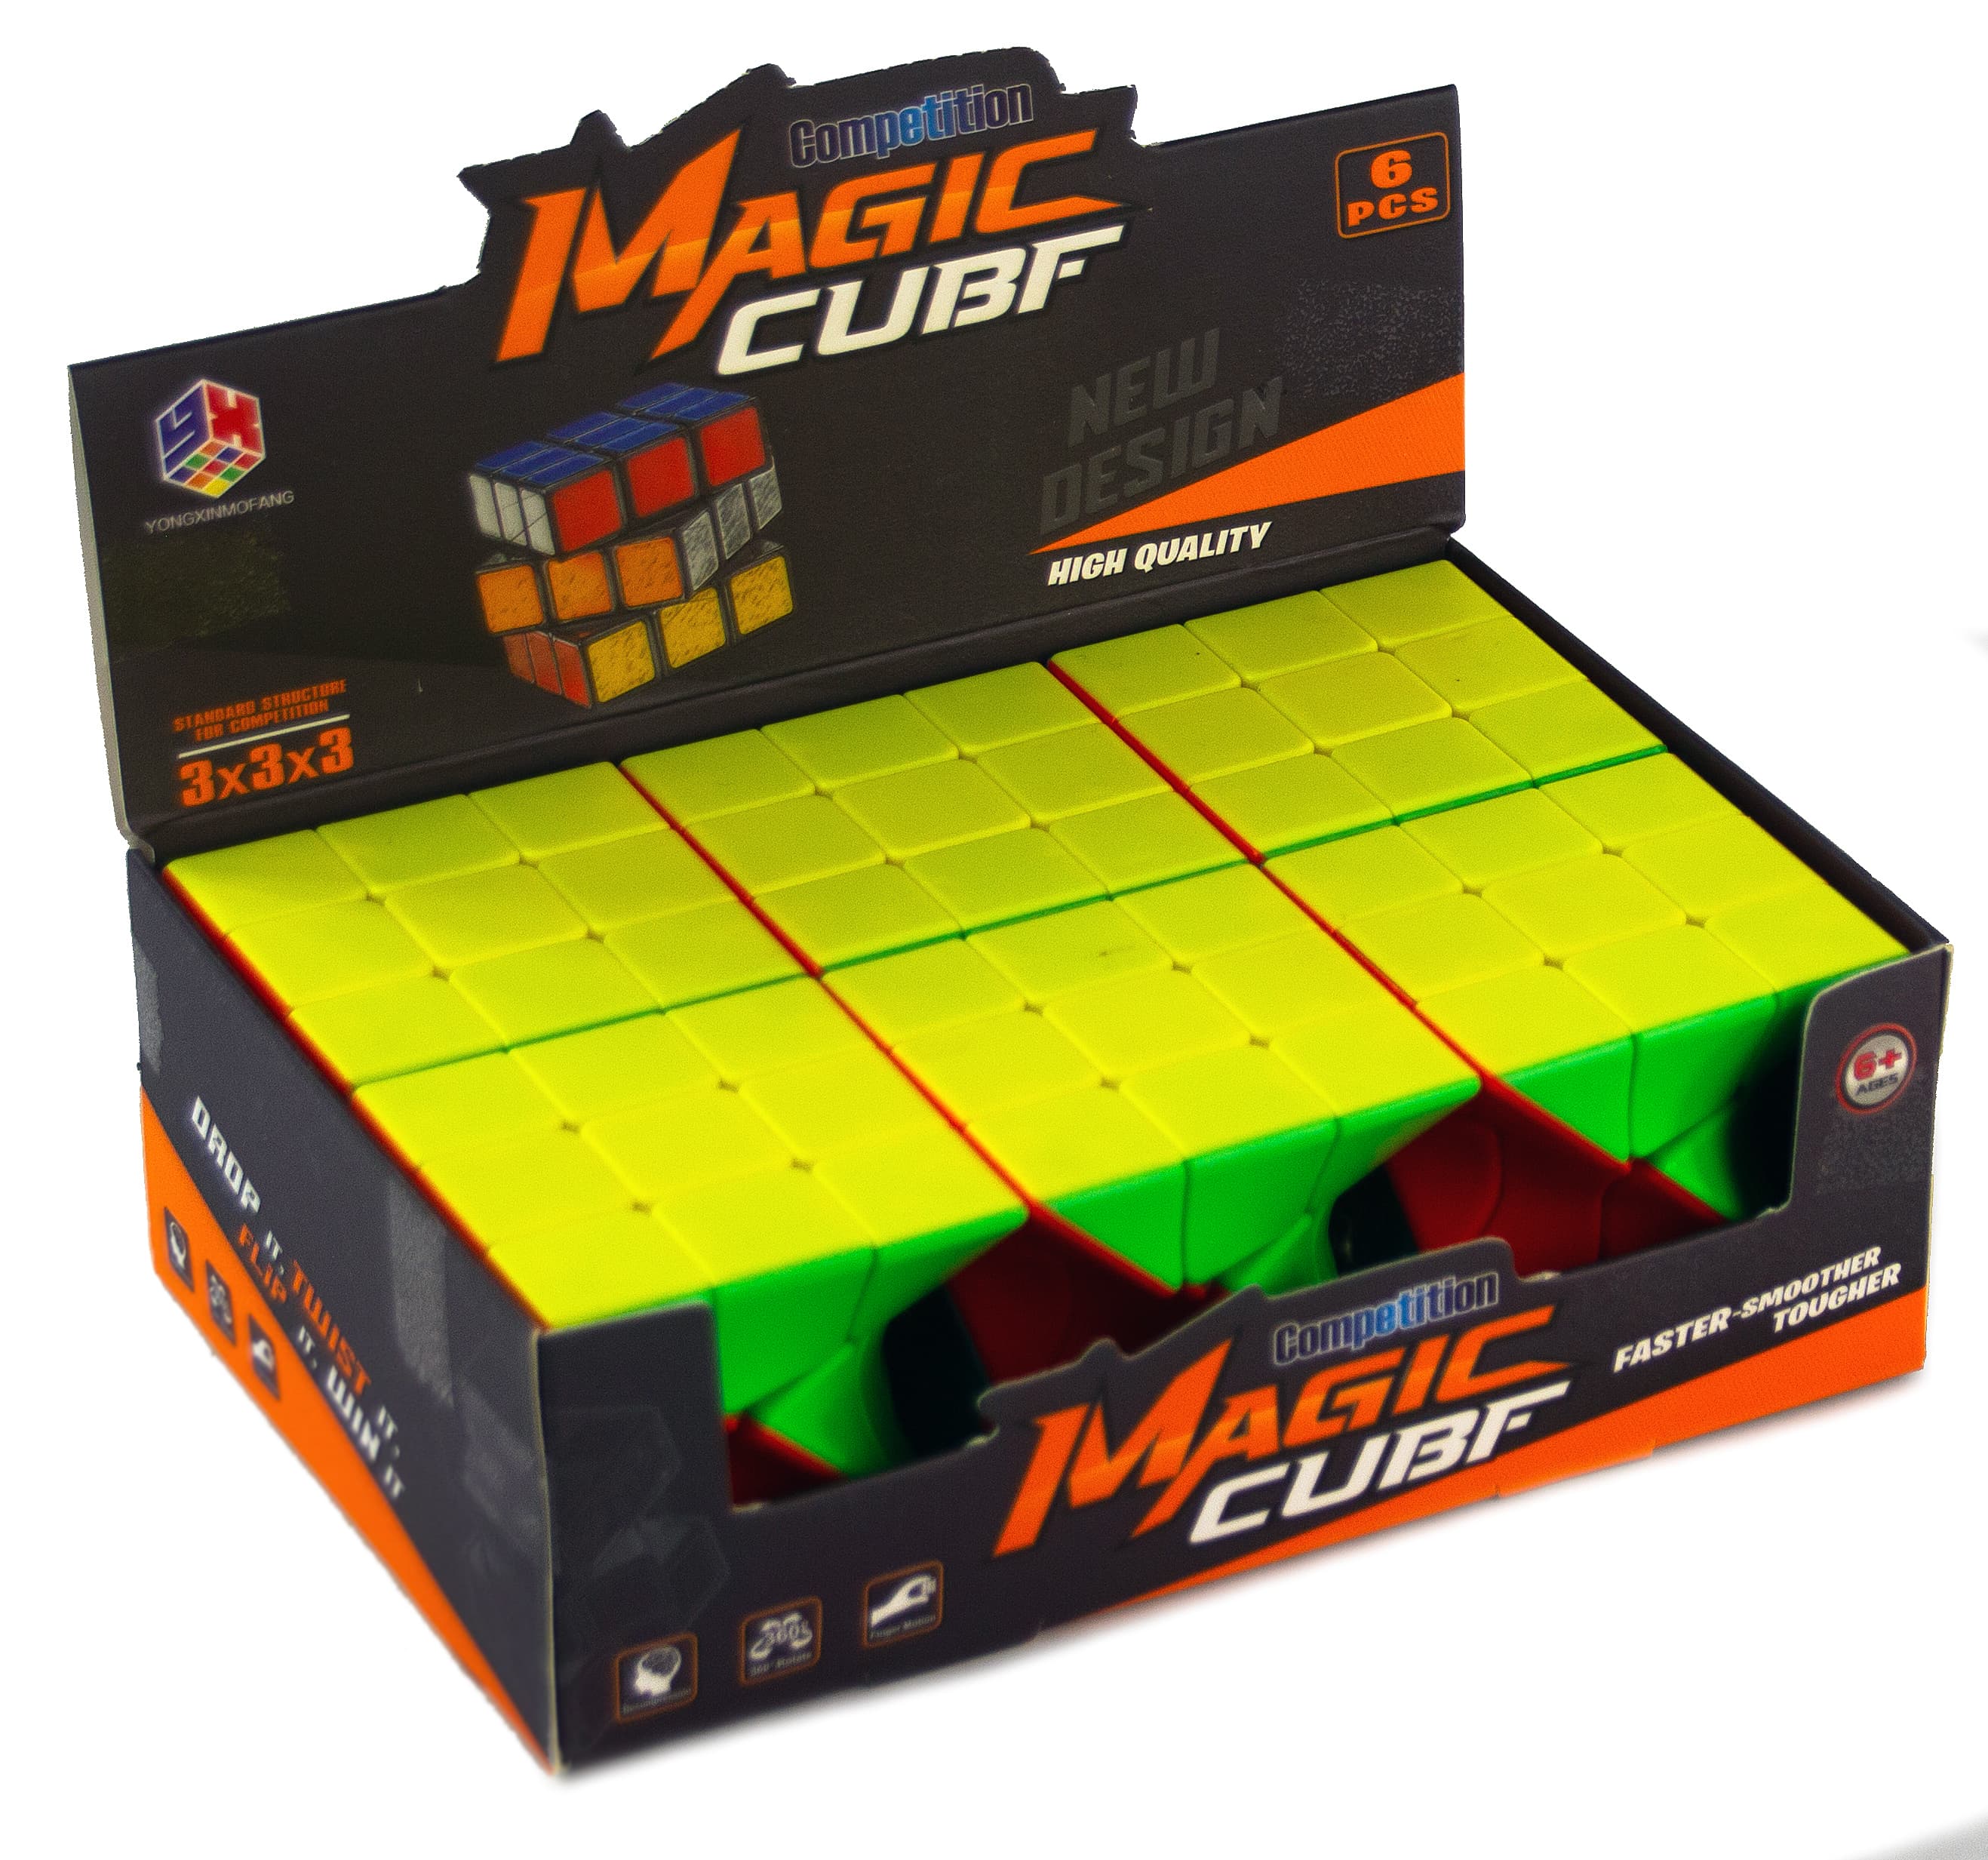 Логический кубик Рубика головоломка «Twisty Cube» 5.5 см. C168-9 / 3х3х3